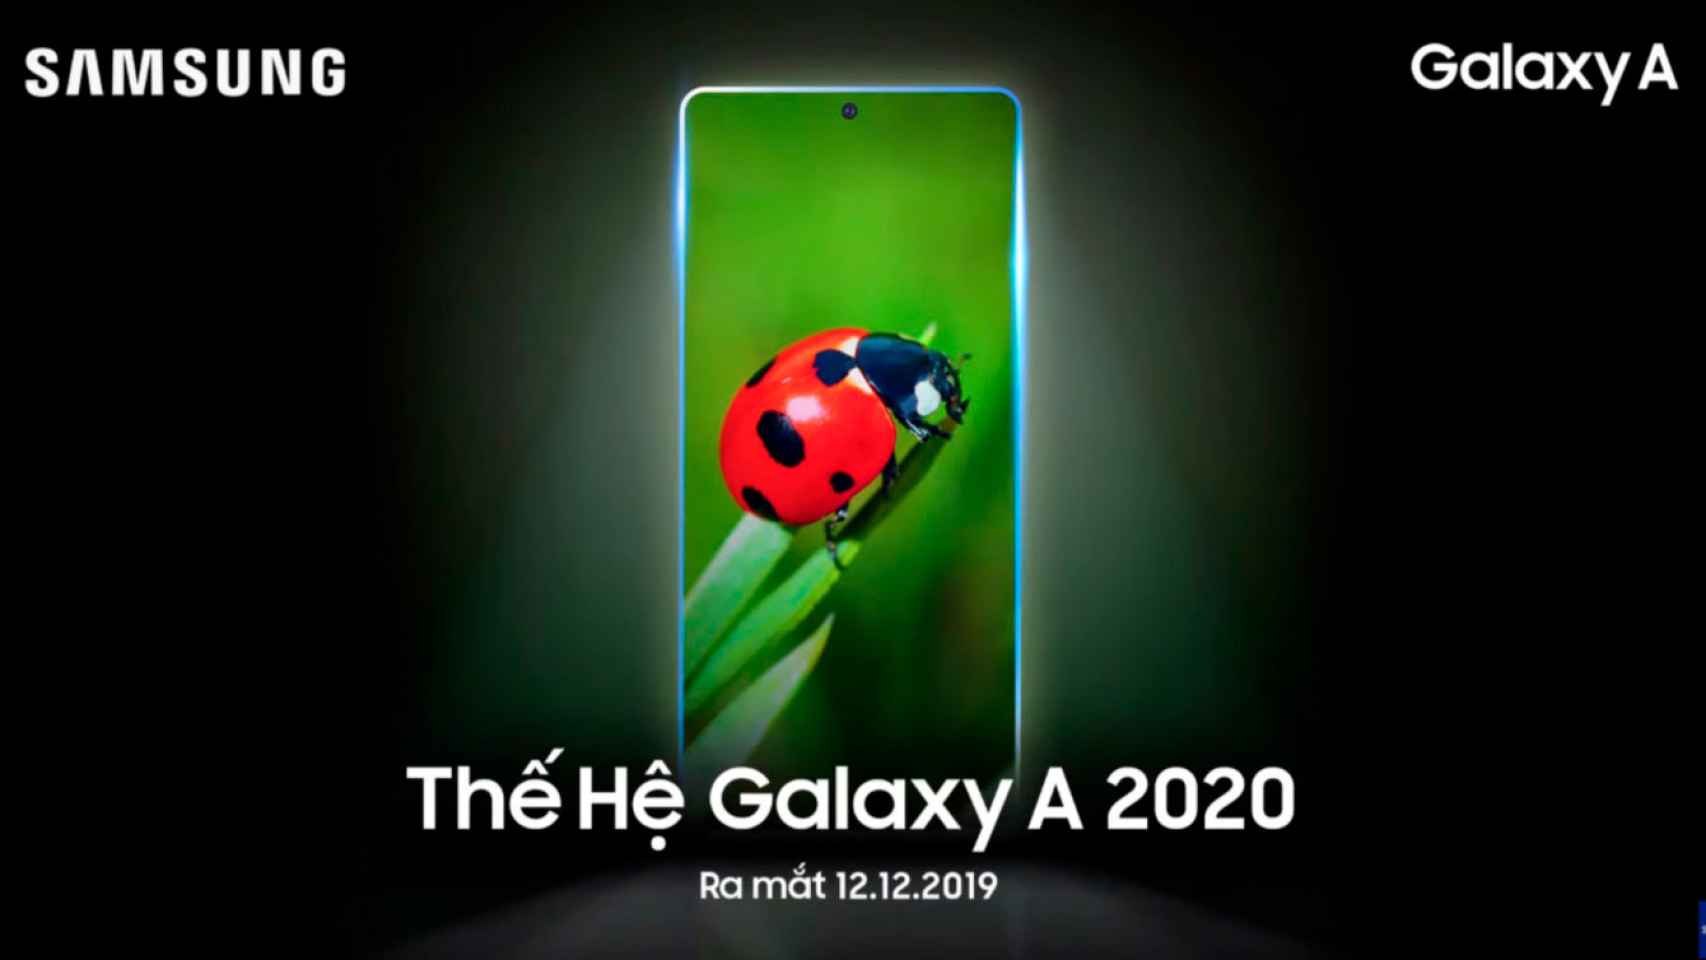 Los Samsung Galaxy A 2020 ya tienen fecha de presentación